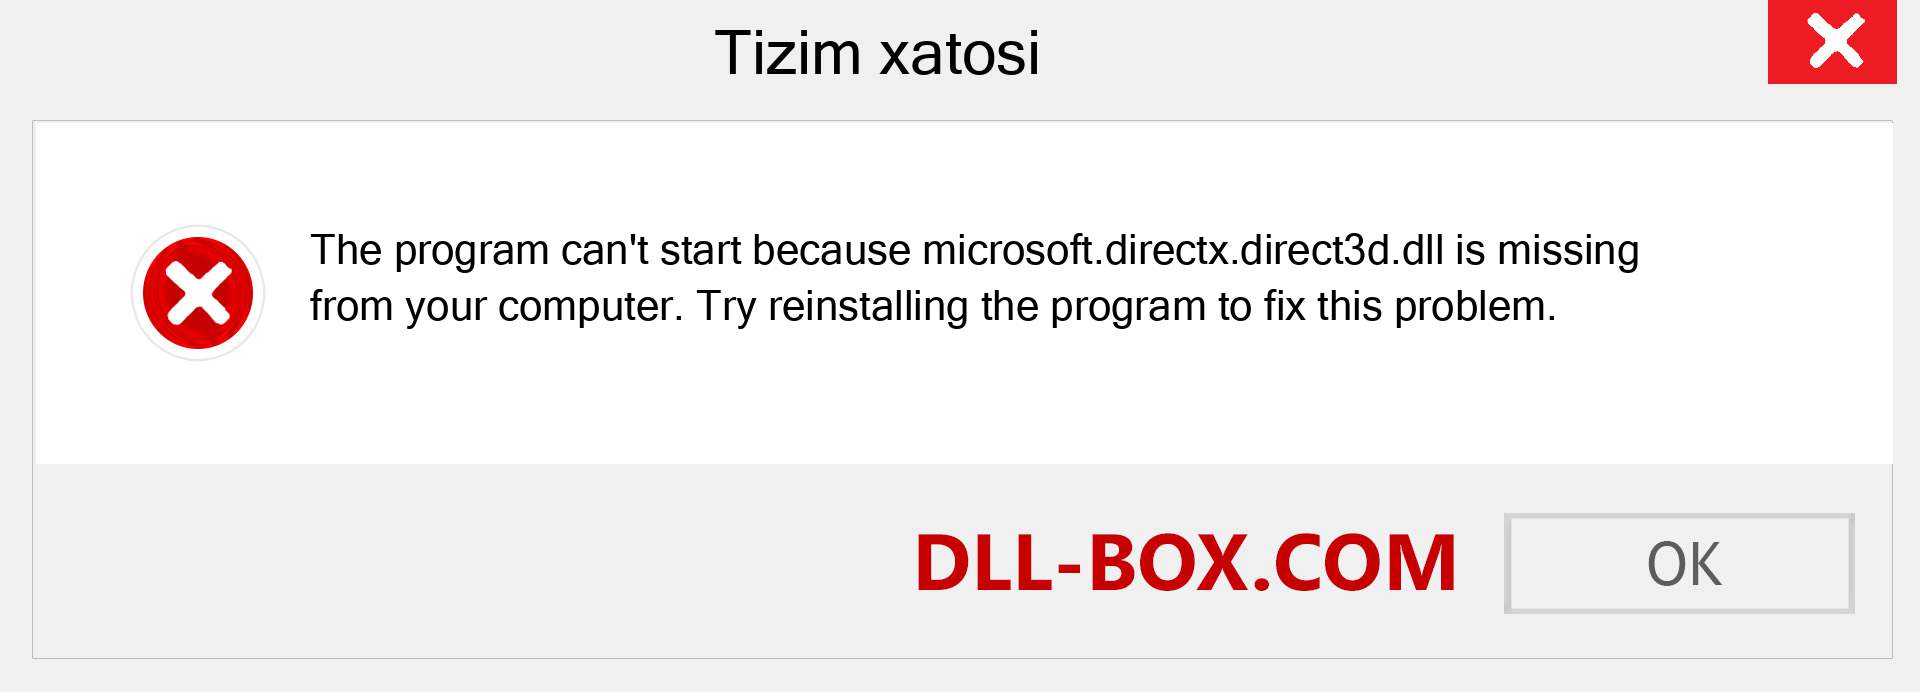 microsoft.directx.direct3d.dll fayli yo'qolganmi?. Windows 7, 8, 10 uchun yuklab olish - Windowsda microsoft.directx.direct3d dll etishmayotgan xatoni tuzating, rasmlar, rasmlar